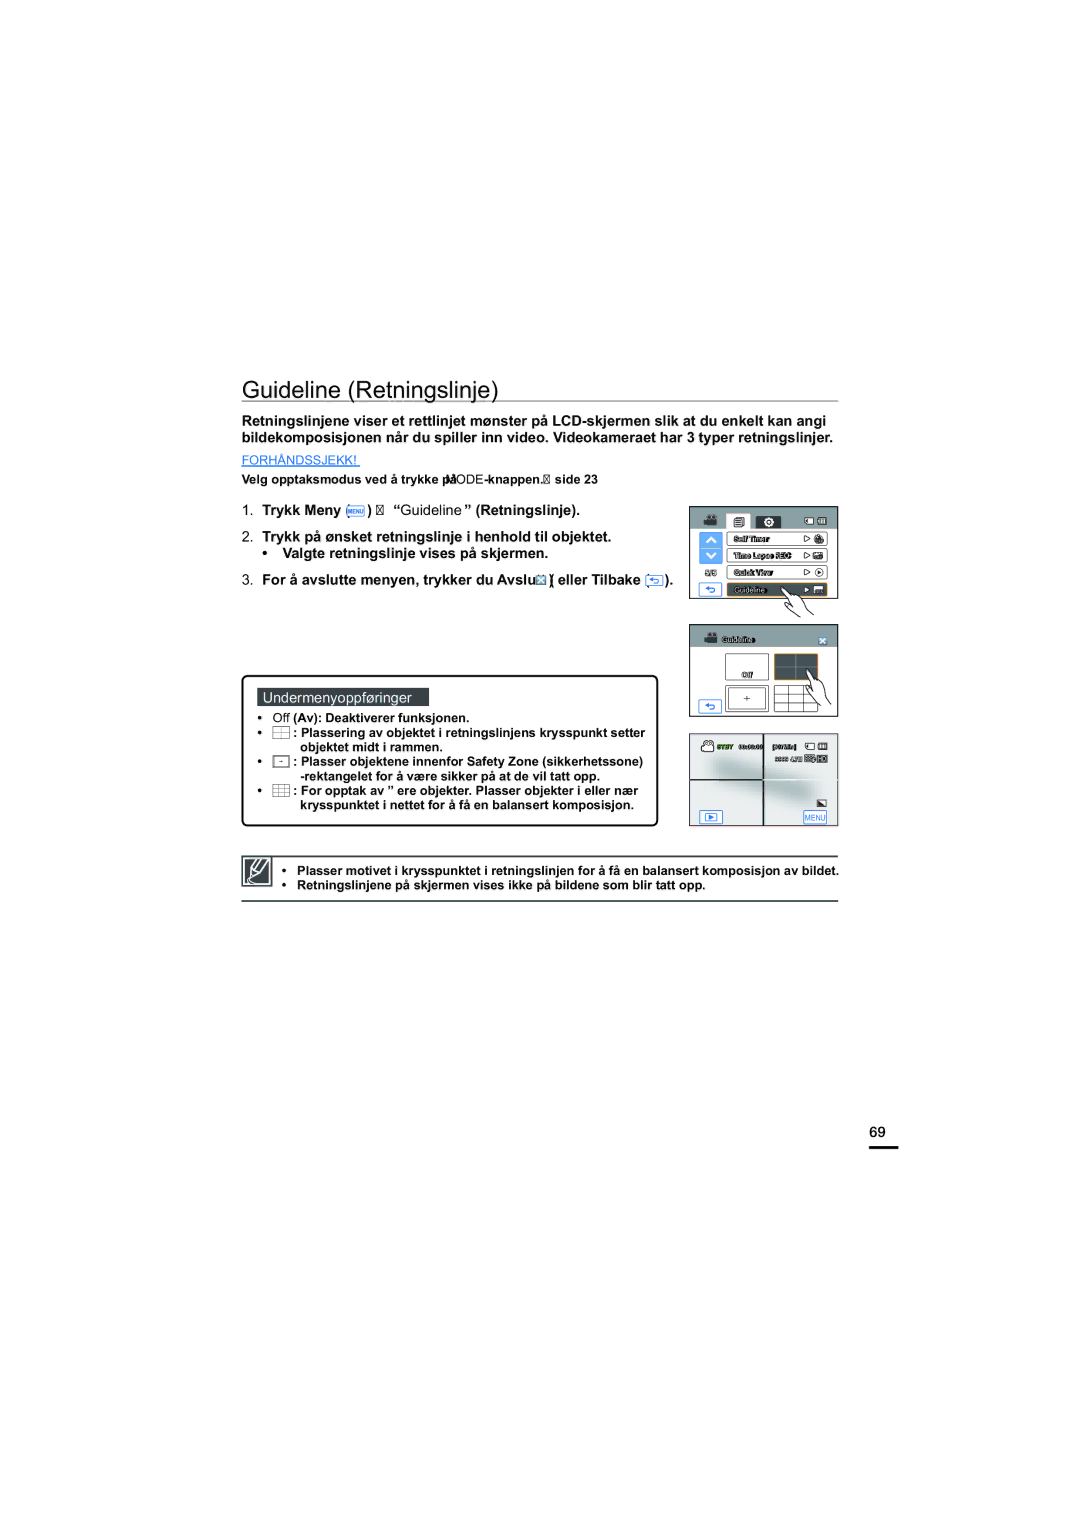 Samsung HMX-H200BP/EDC, HMX-H204BP/EDC, HMX-H203BP/EDC manual Guideline Retningslinje, Valgte retningslinje vises på skjermen 